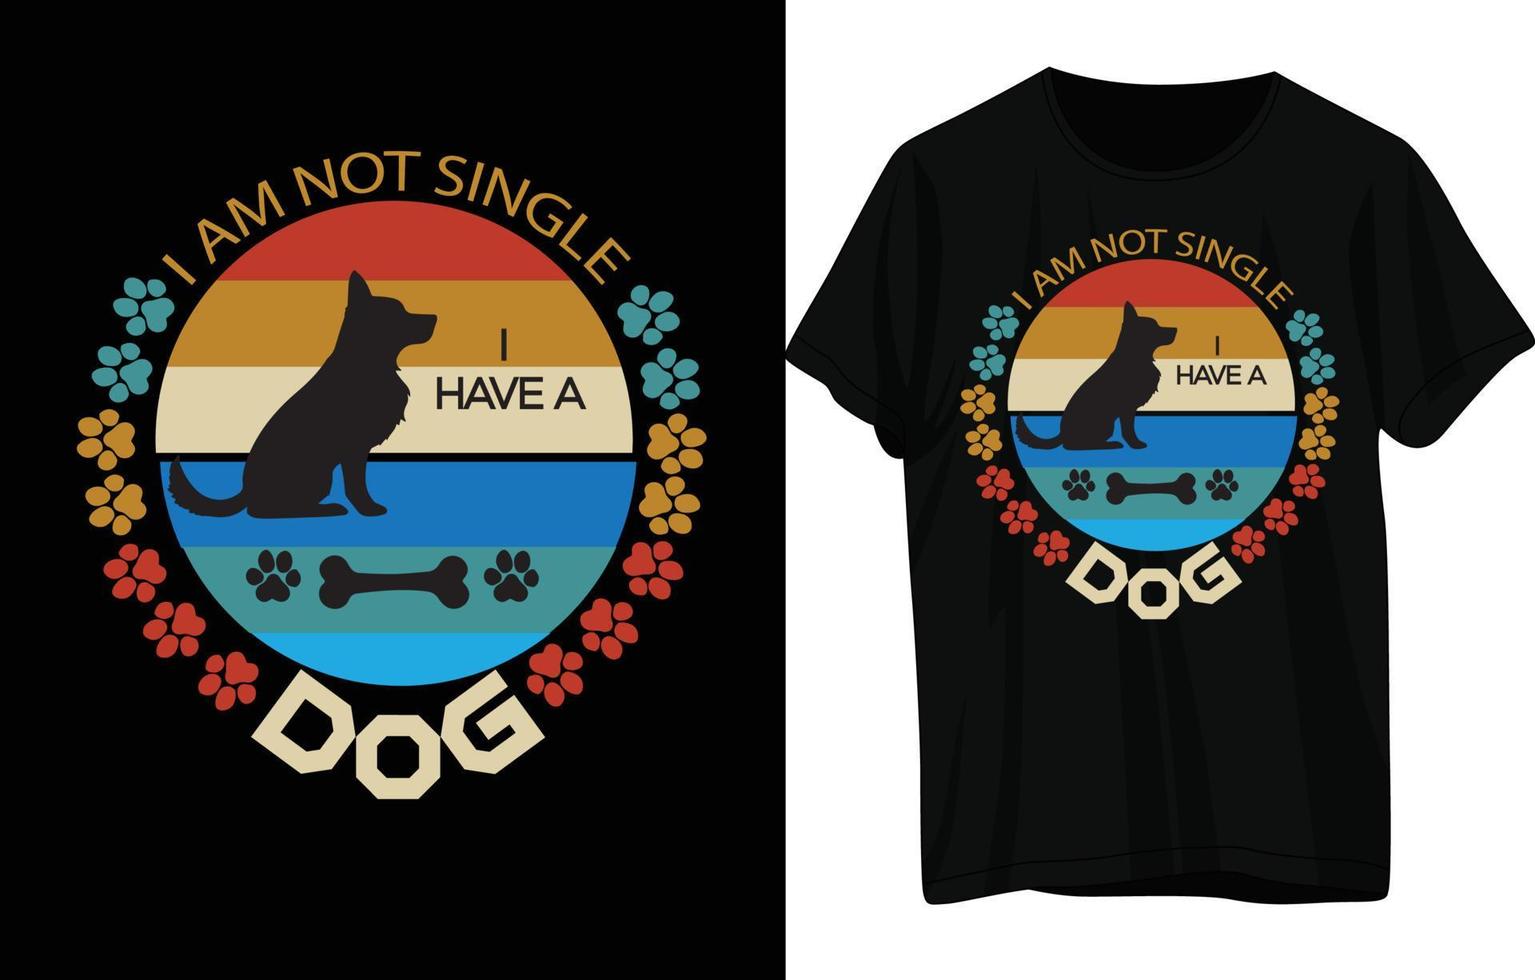 conception de t-shirt pour chien vecteur